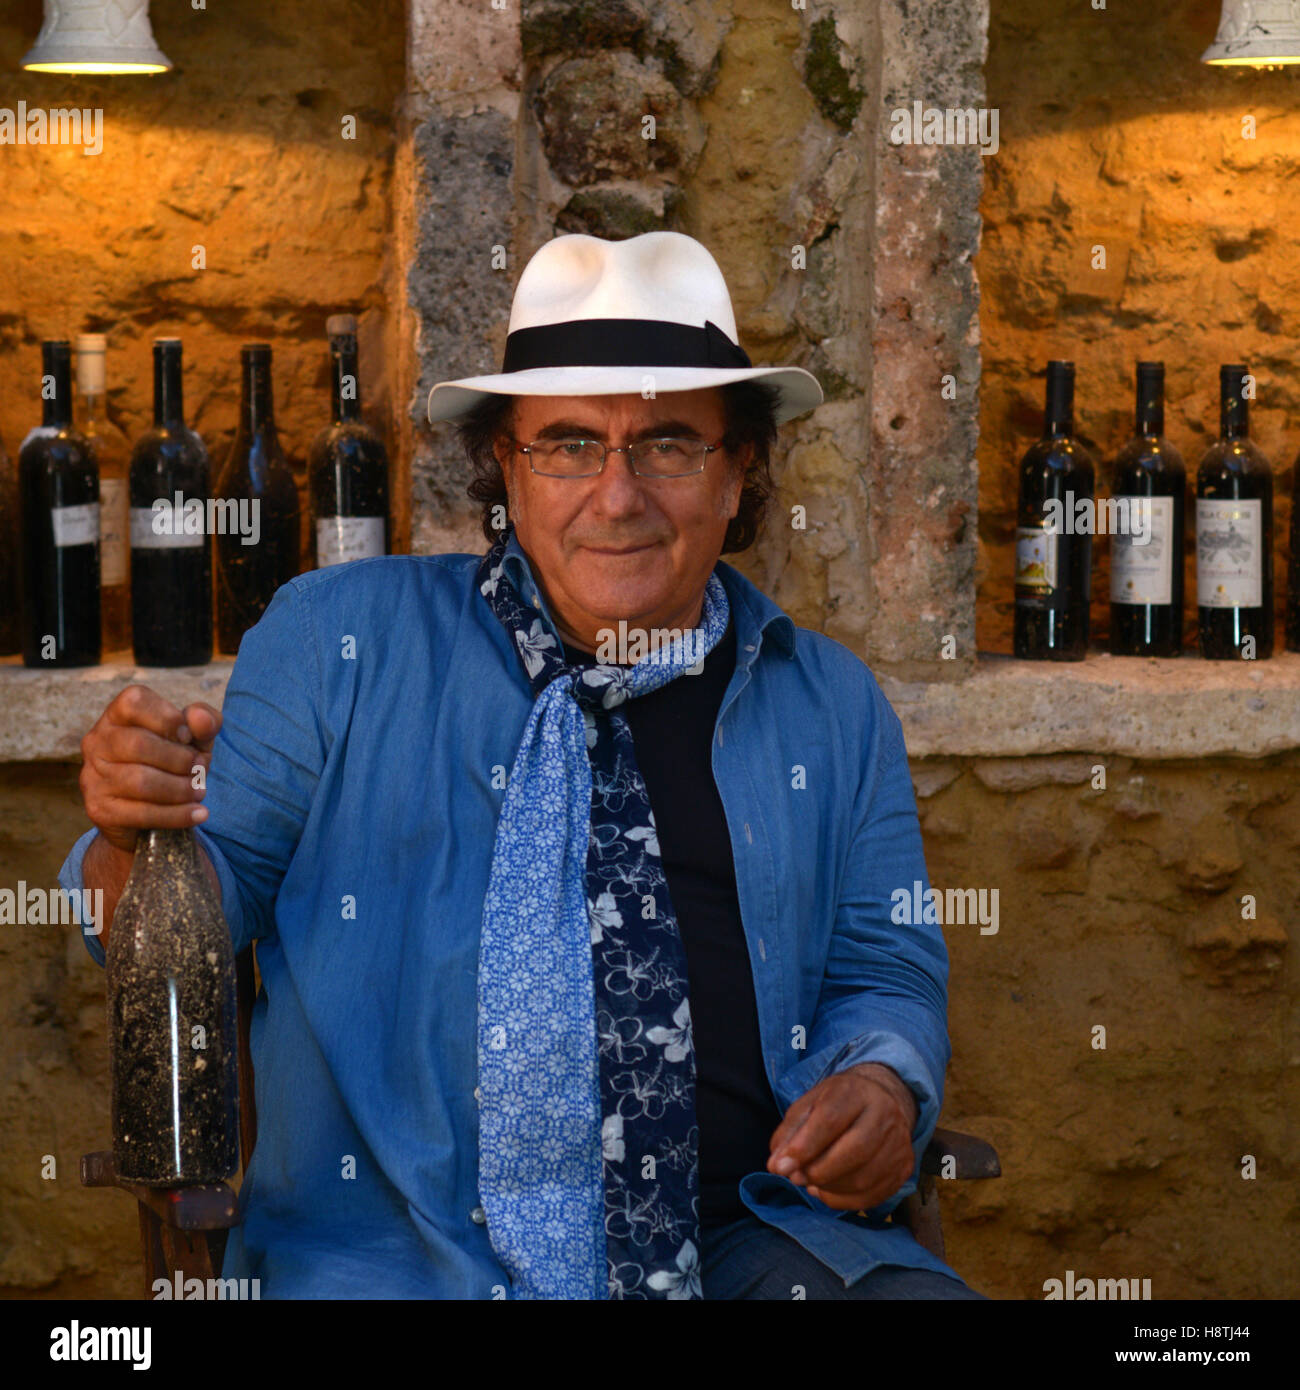 The Italian singer Al Bano, portrait in the cellar of his farmhouse Tenute Al Bano Carrisi, Cellino San Marco (BR), Italy, June Stock Photo